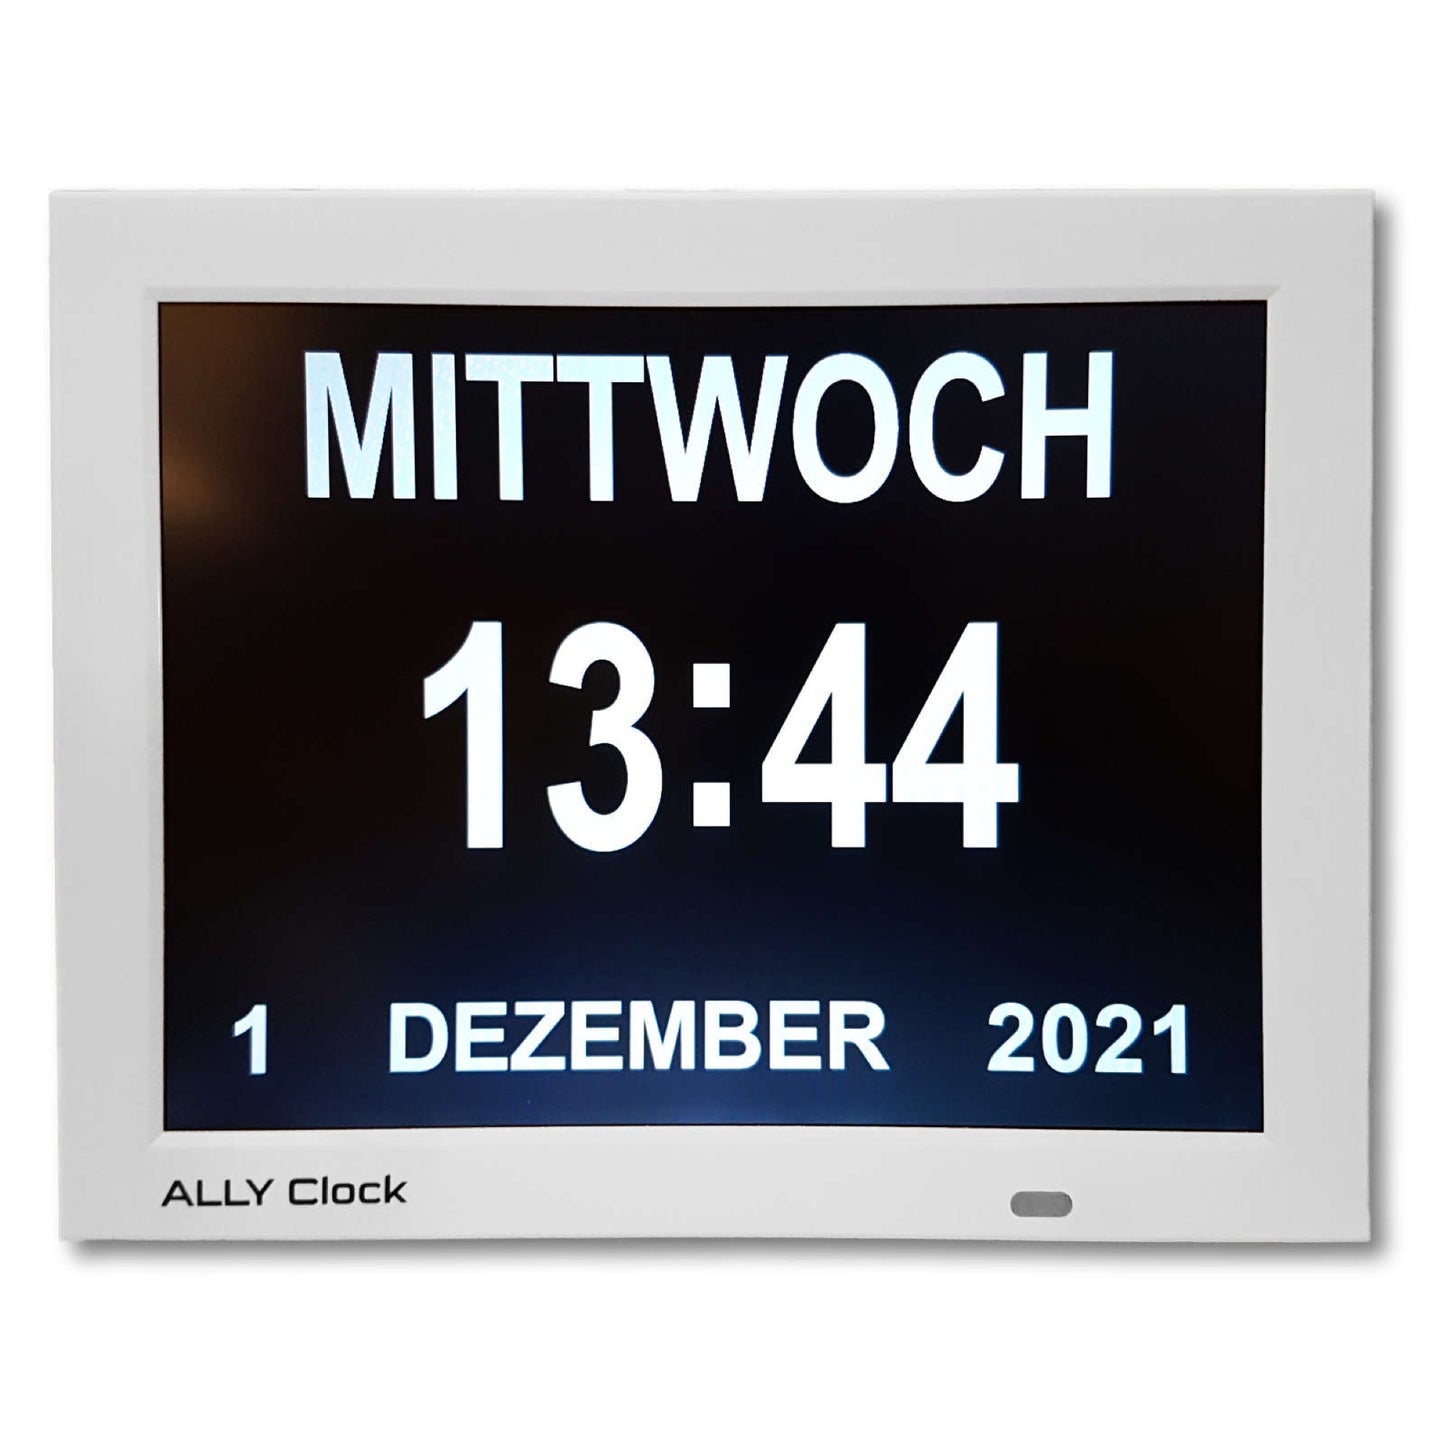 ALLY Clock XXL 30cm große Uhr mit Wochentagen, Datum und Uhrzeit